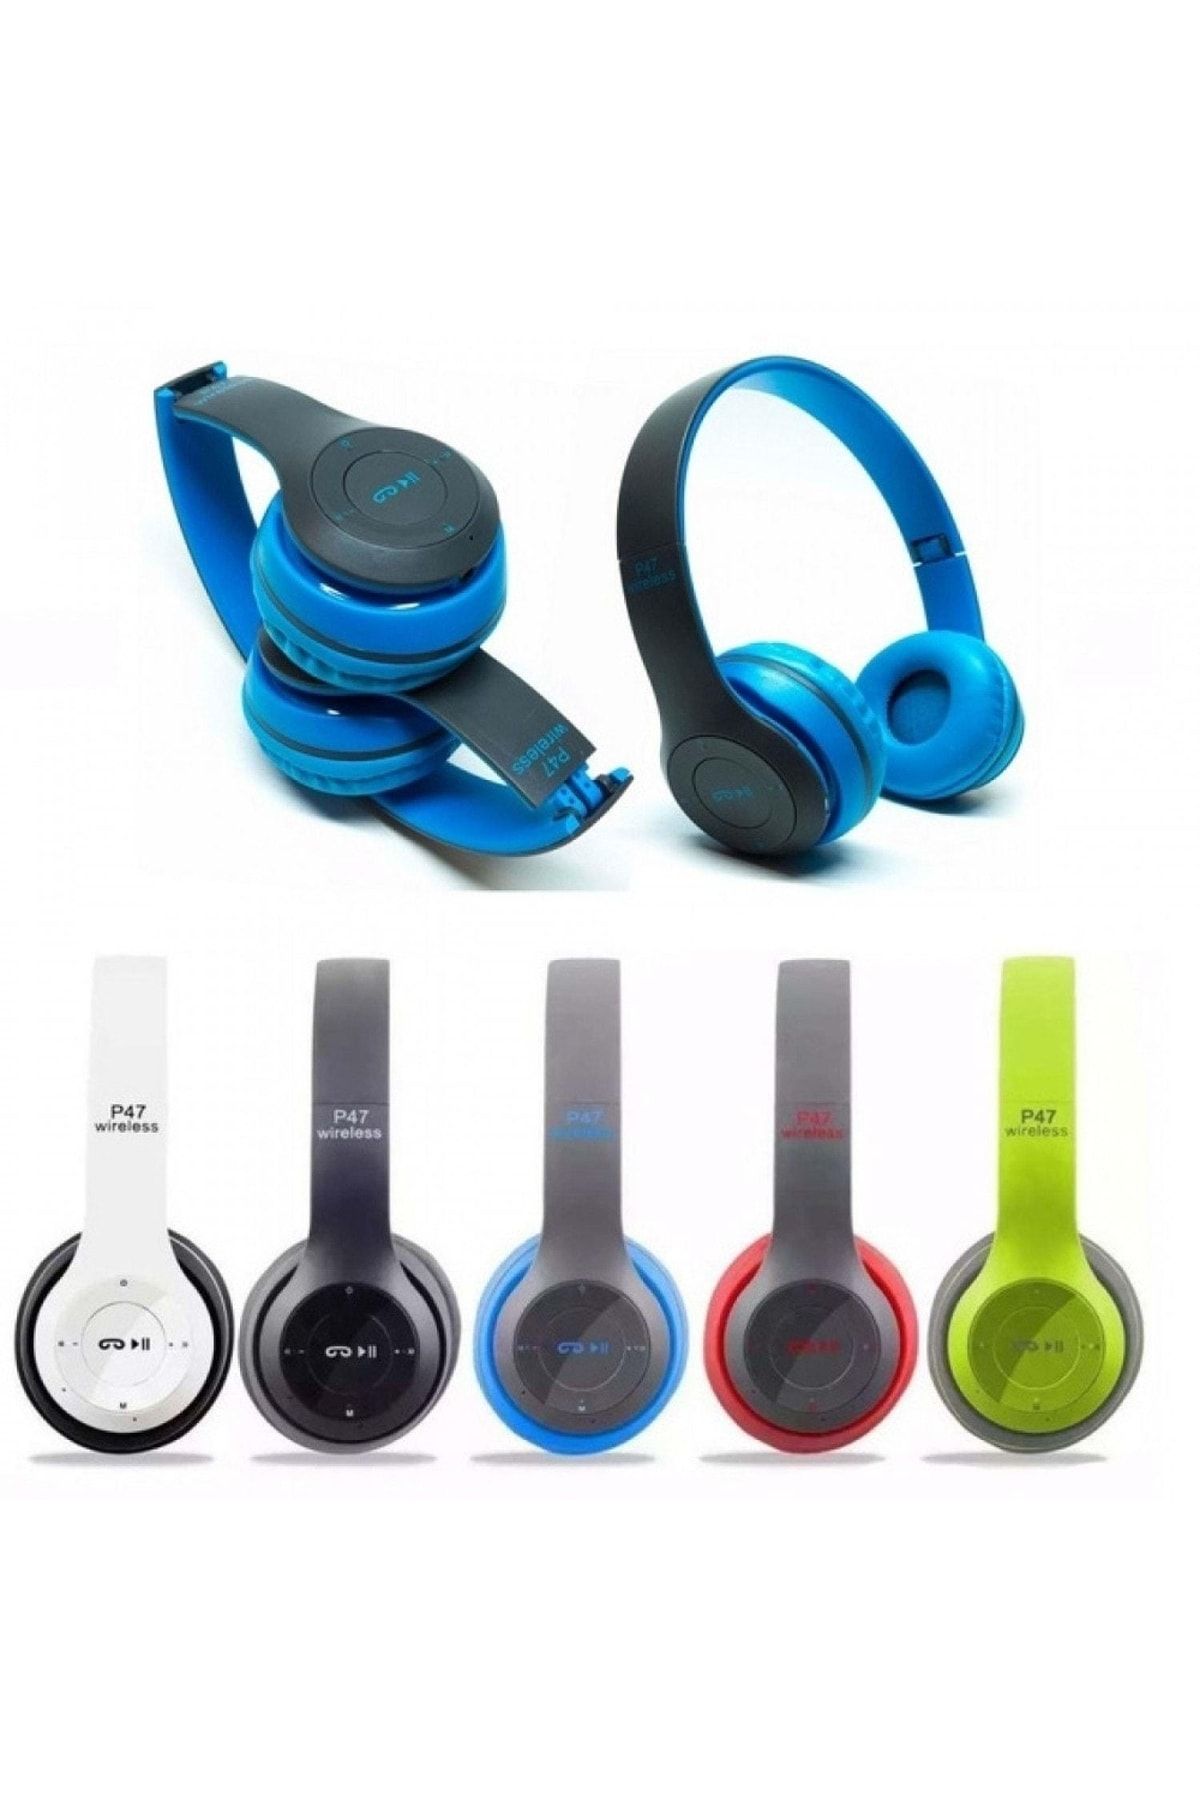 instatech Azr P47 Katlanalabilir Bluetooth 4.2+edr Kulak Üstü Kulaklık Mavi